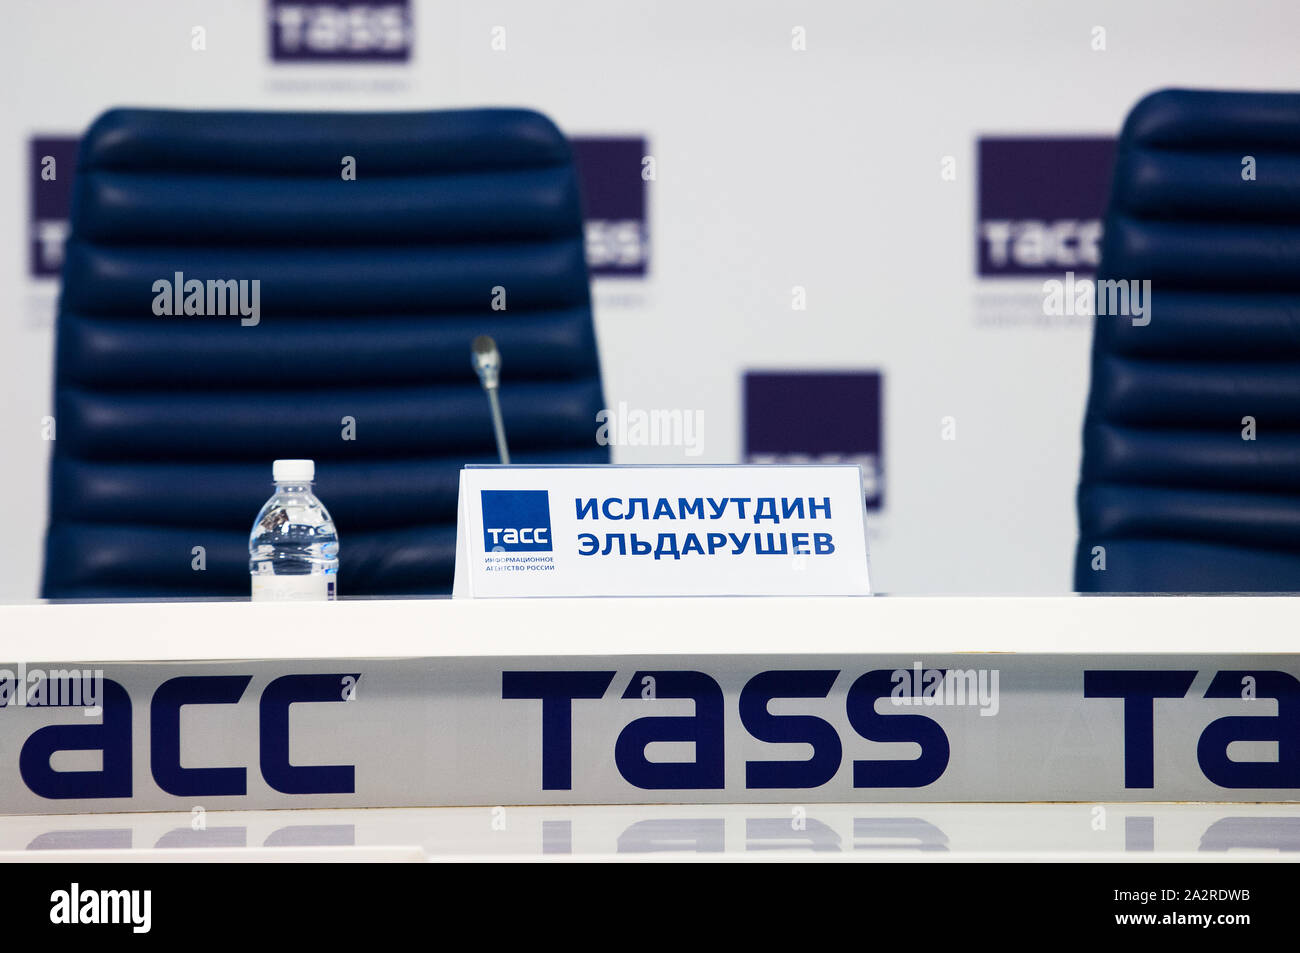 Moskau, Russland - OKTOBER 3, 2019: Islamutdin Eldarushev Karte auf den Tisch während der Pressekonferenz der Internationalen Karate Turnier "Karate 1 - Premier League' am 03.10.2019 in TASS-Center, Moskau, Russland Stockfoto